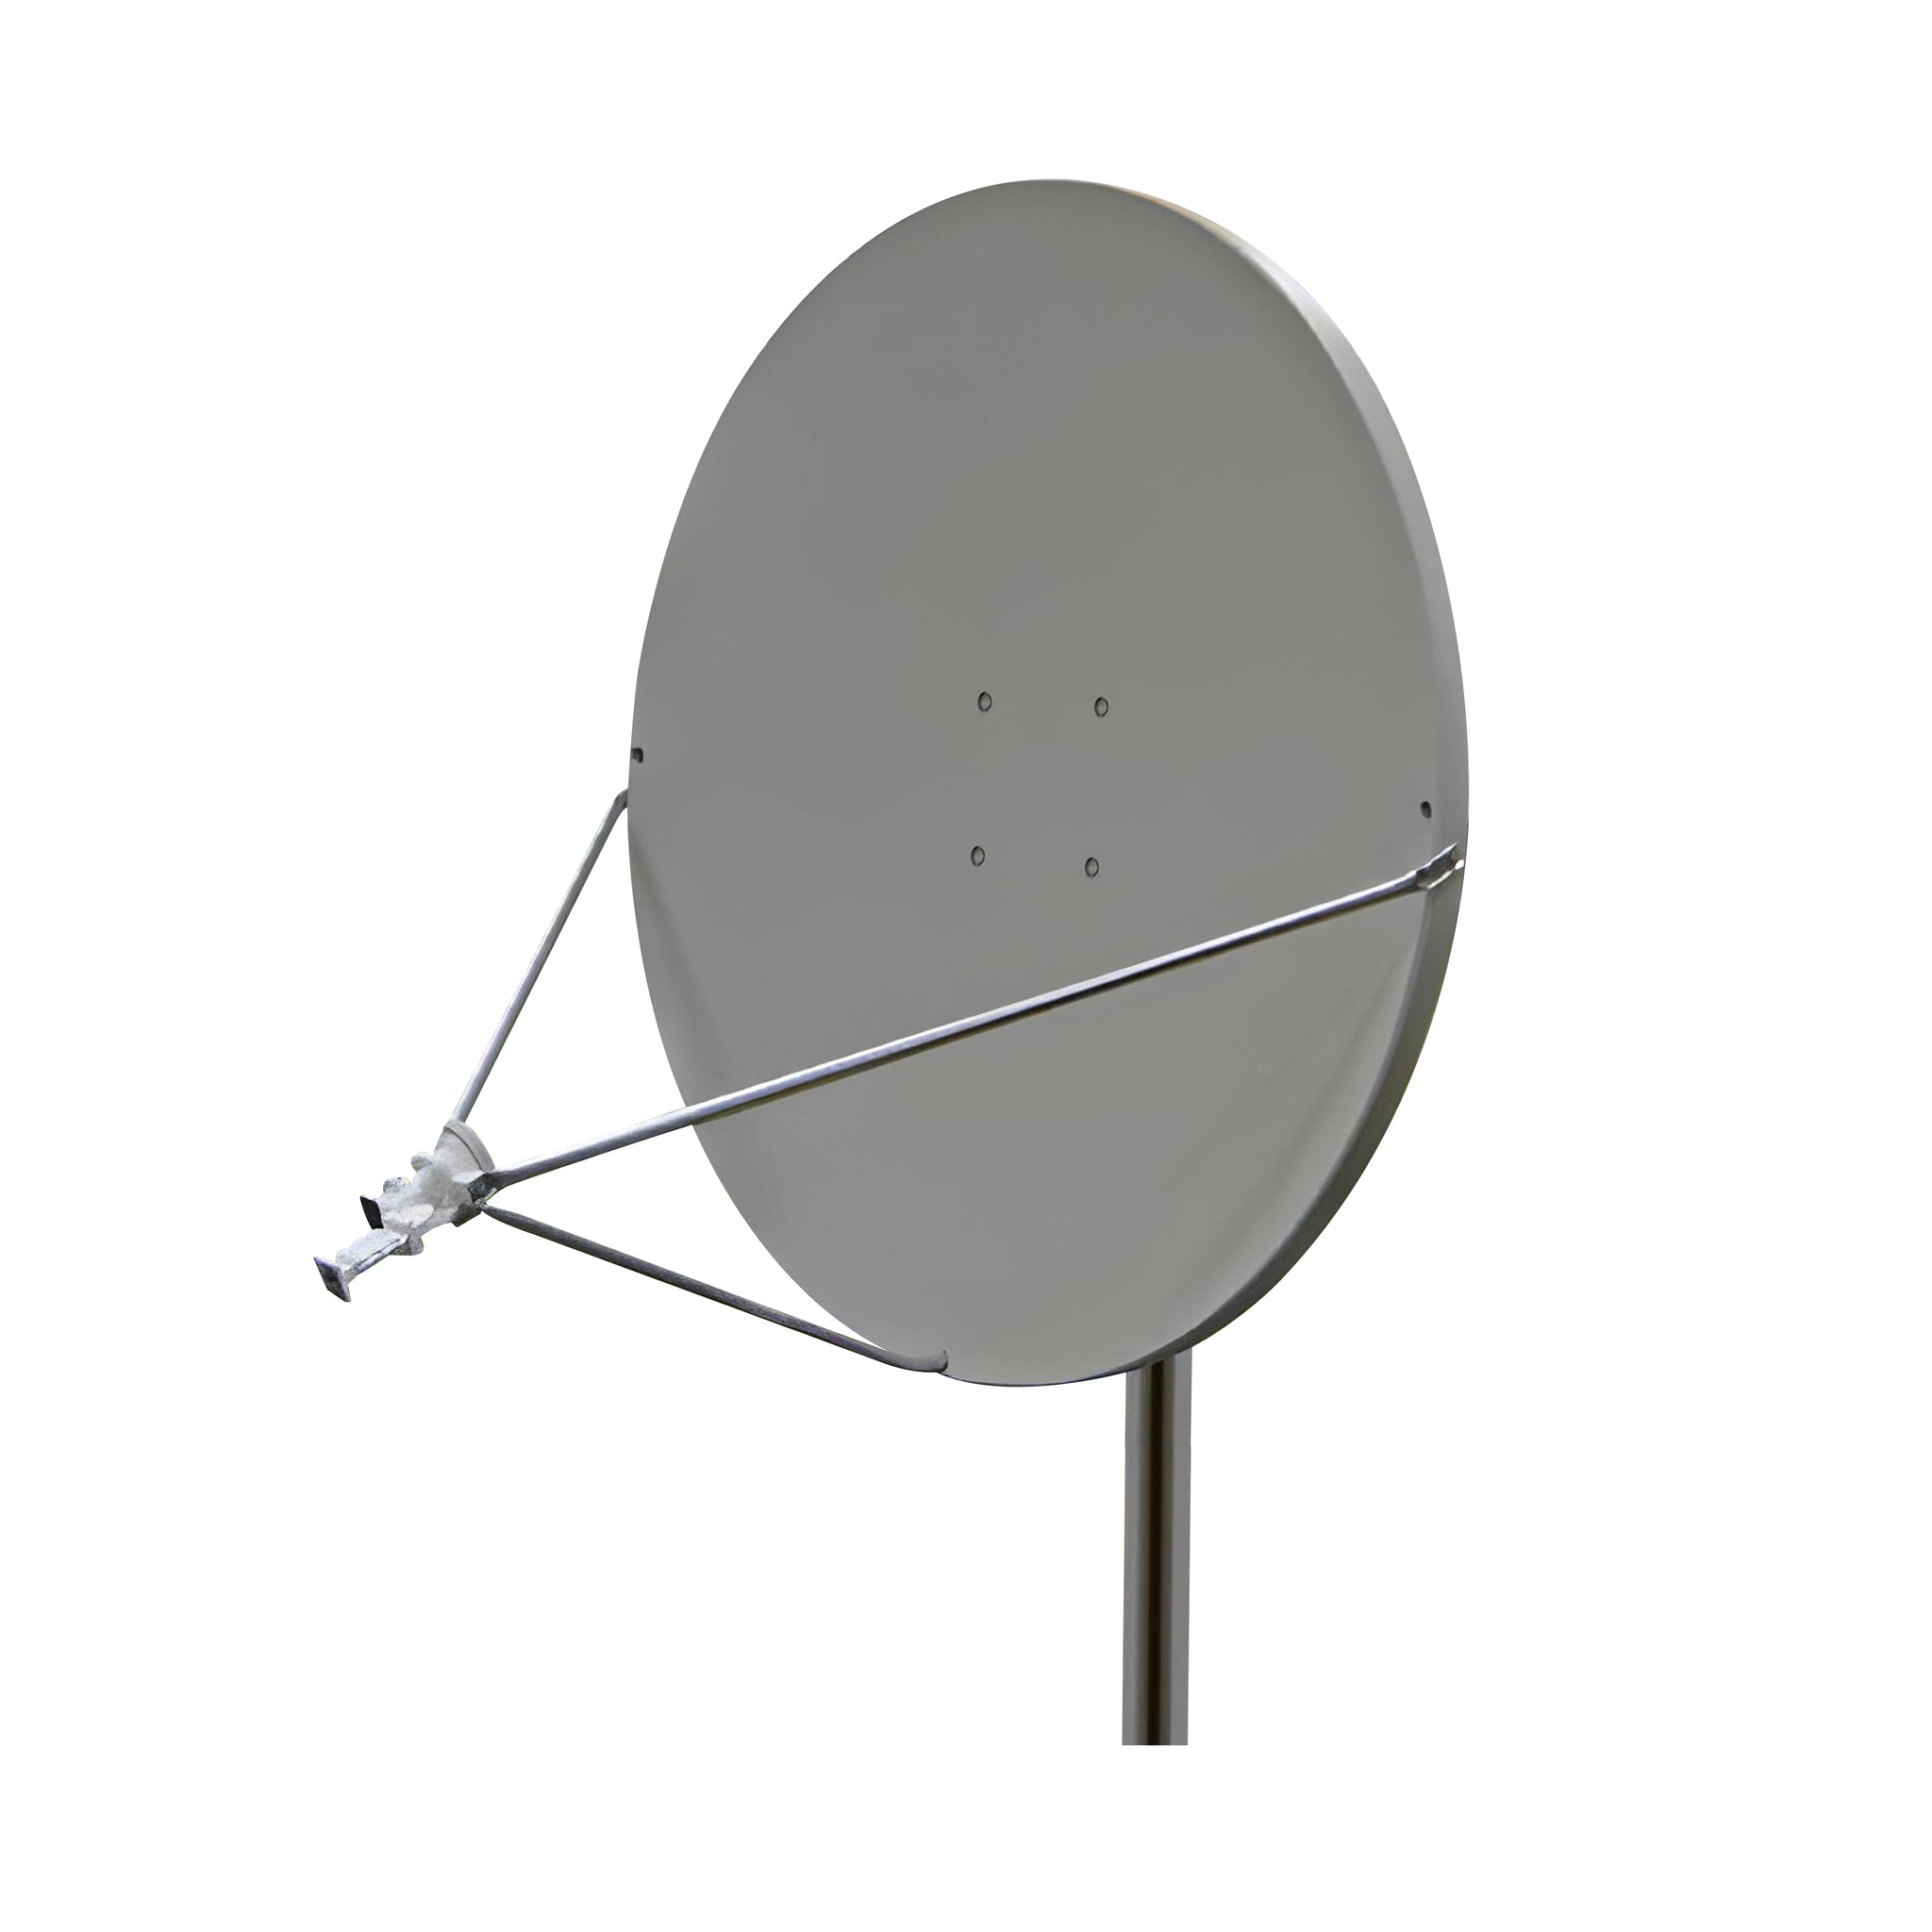 transmitter antenna